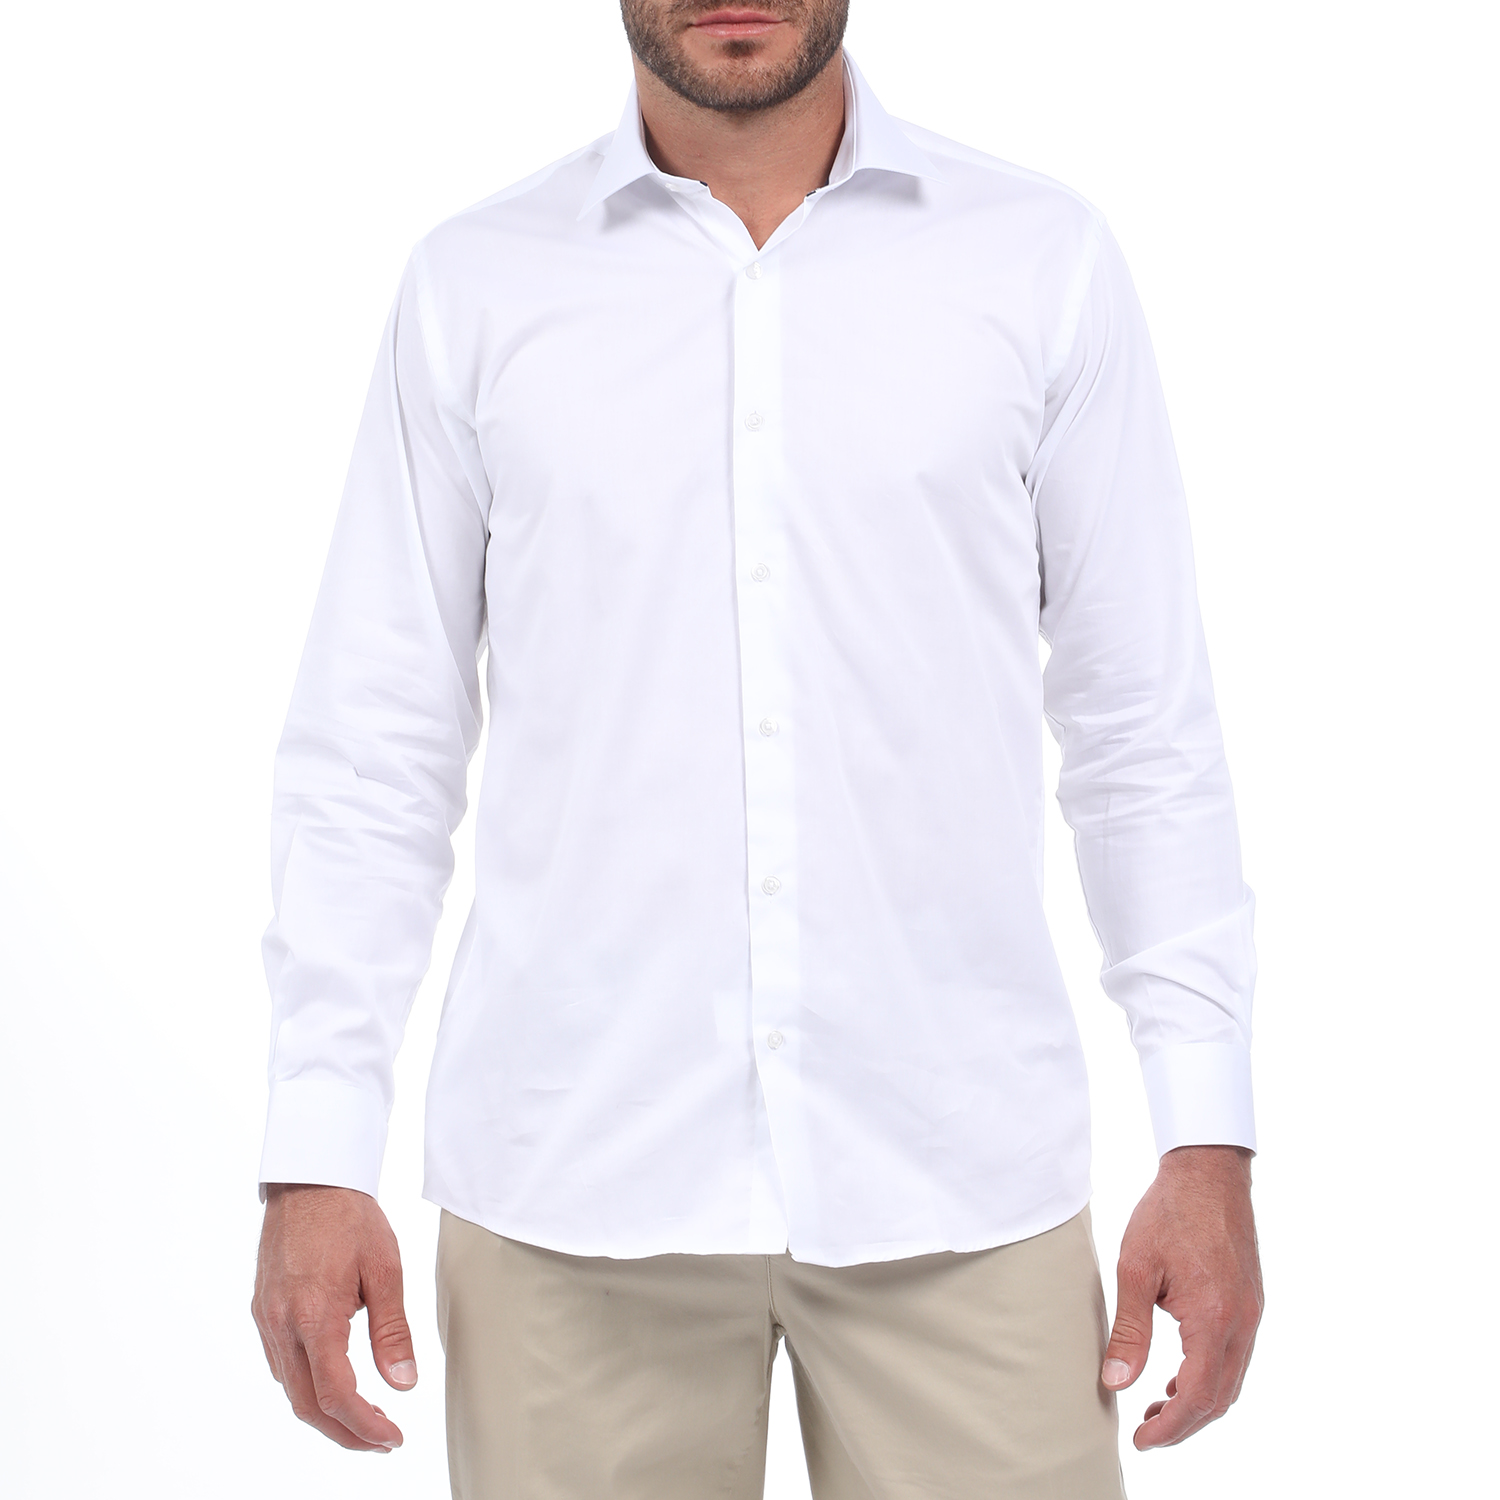 Ανδρικά/Ρούχα/Πουκάμισα/Μακρυμάνικα MARTIN & CO - Ανδρικό πουκάμισο MARTIN & CO REGULAR FIT λευκό